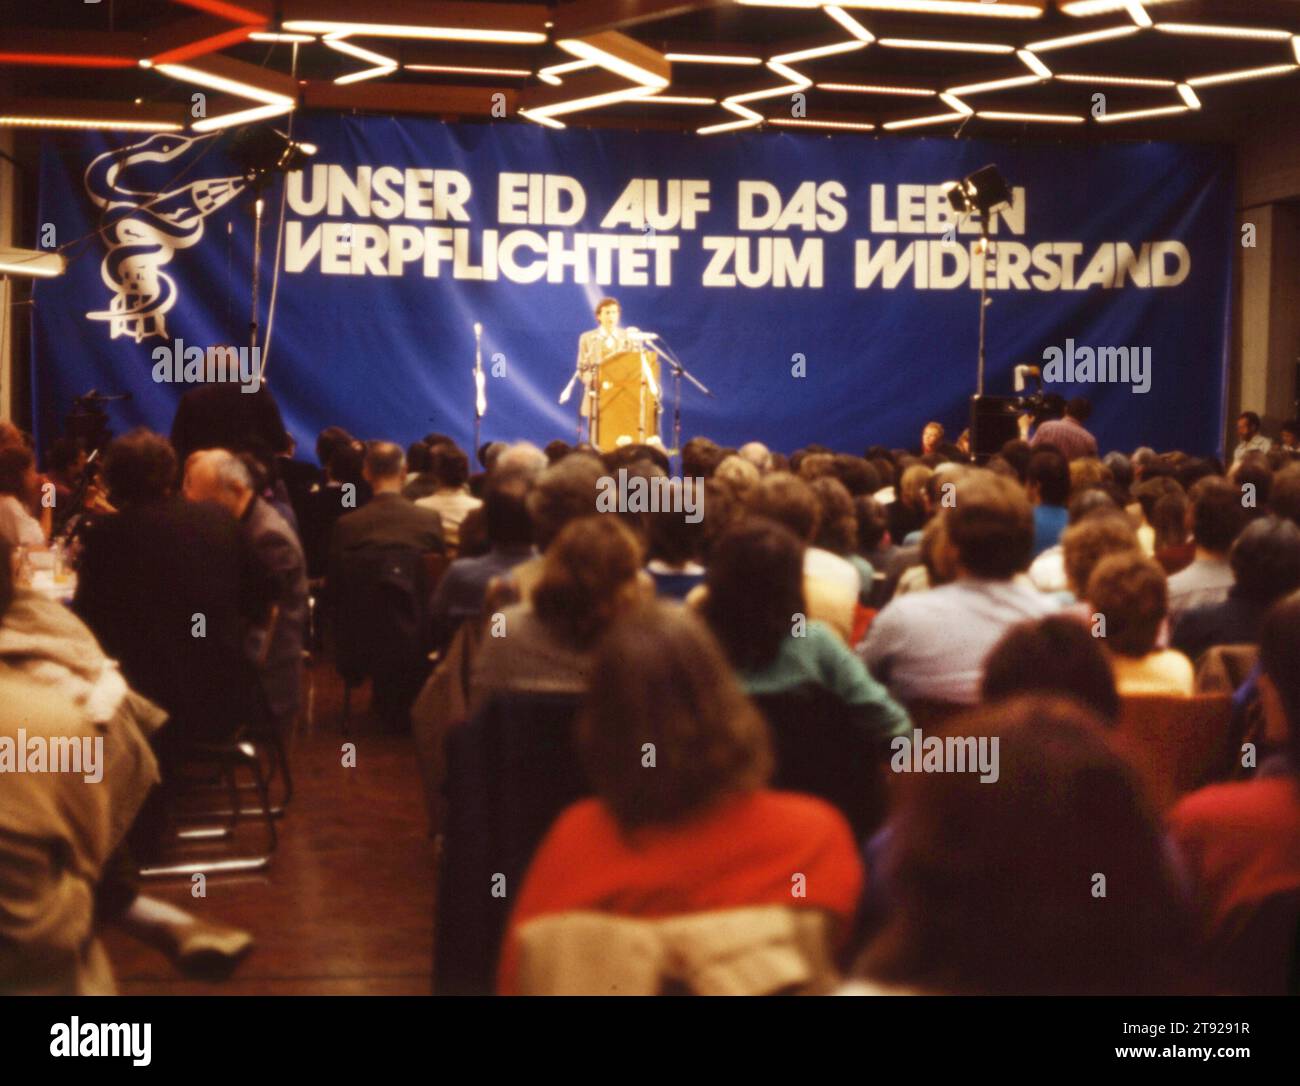 DEU, Germania: Diapositive storiche dei 84-85 anni, area della Ruhr. Movimento per la pace. Congresso contro l'armamento nucleare. CA 1984 cristiani protestanti Foto Stock